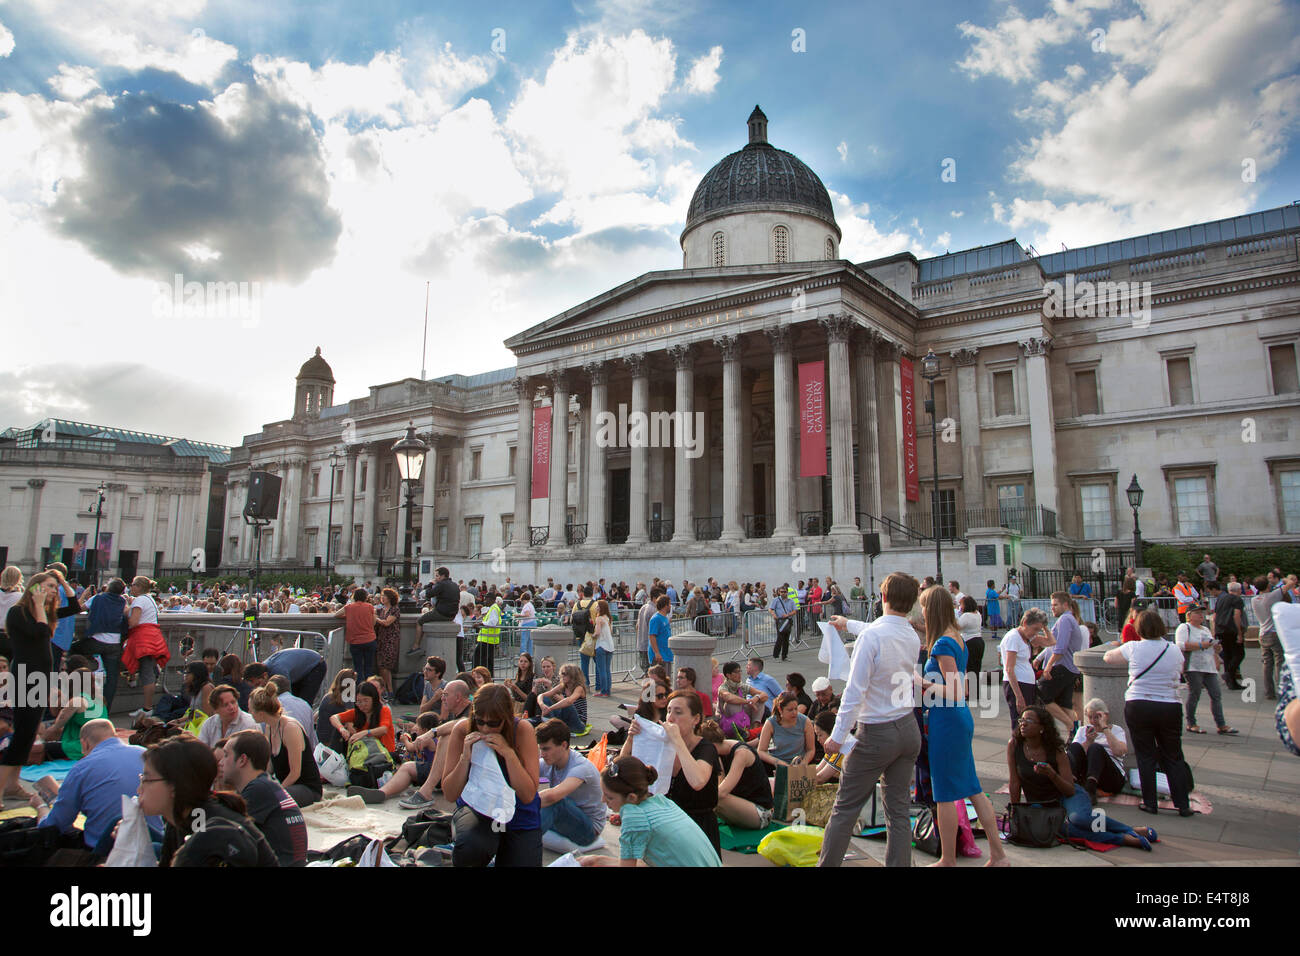 15.07.2014 London, UK - BP Sommer Bildschirme, live-Vorführung von La Boheme aus der Royal Opera House Trafalgar Square Stockfoto